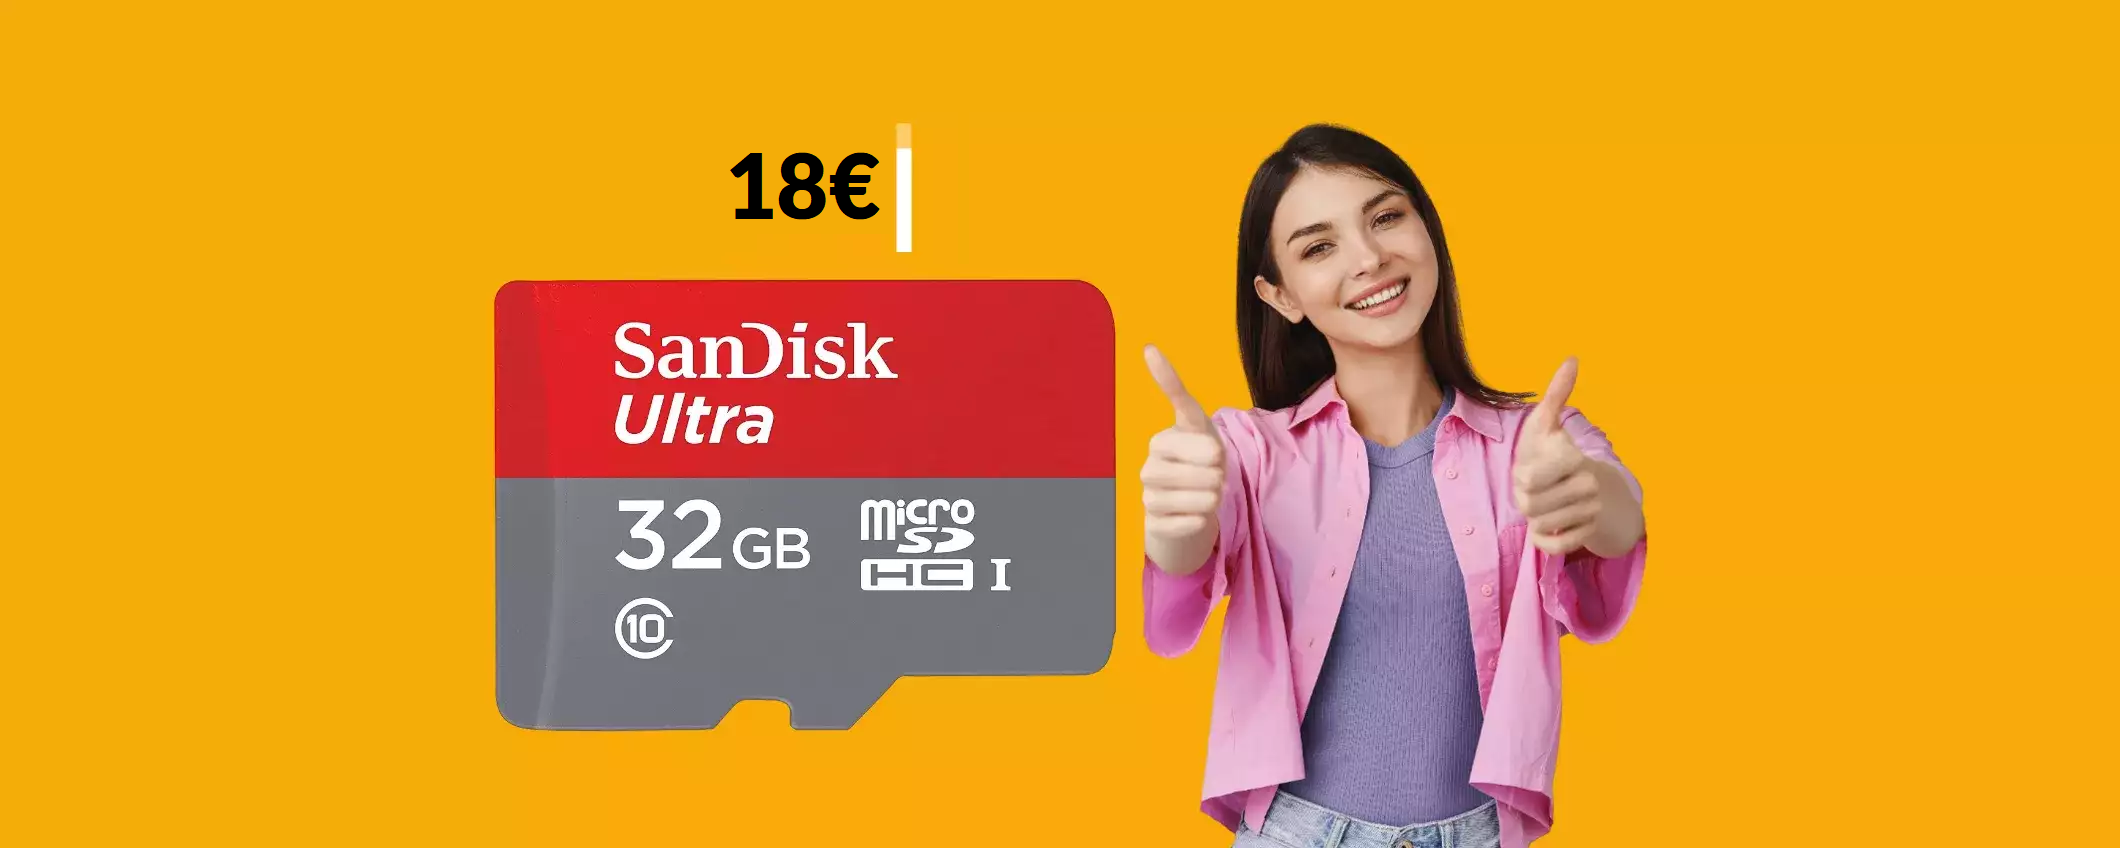 L'ottima microSD SanDisk da 32GB costa sempre di meno (18€)